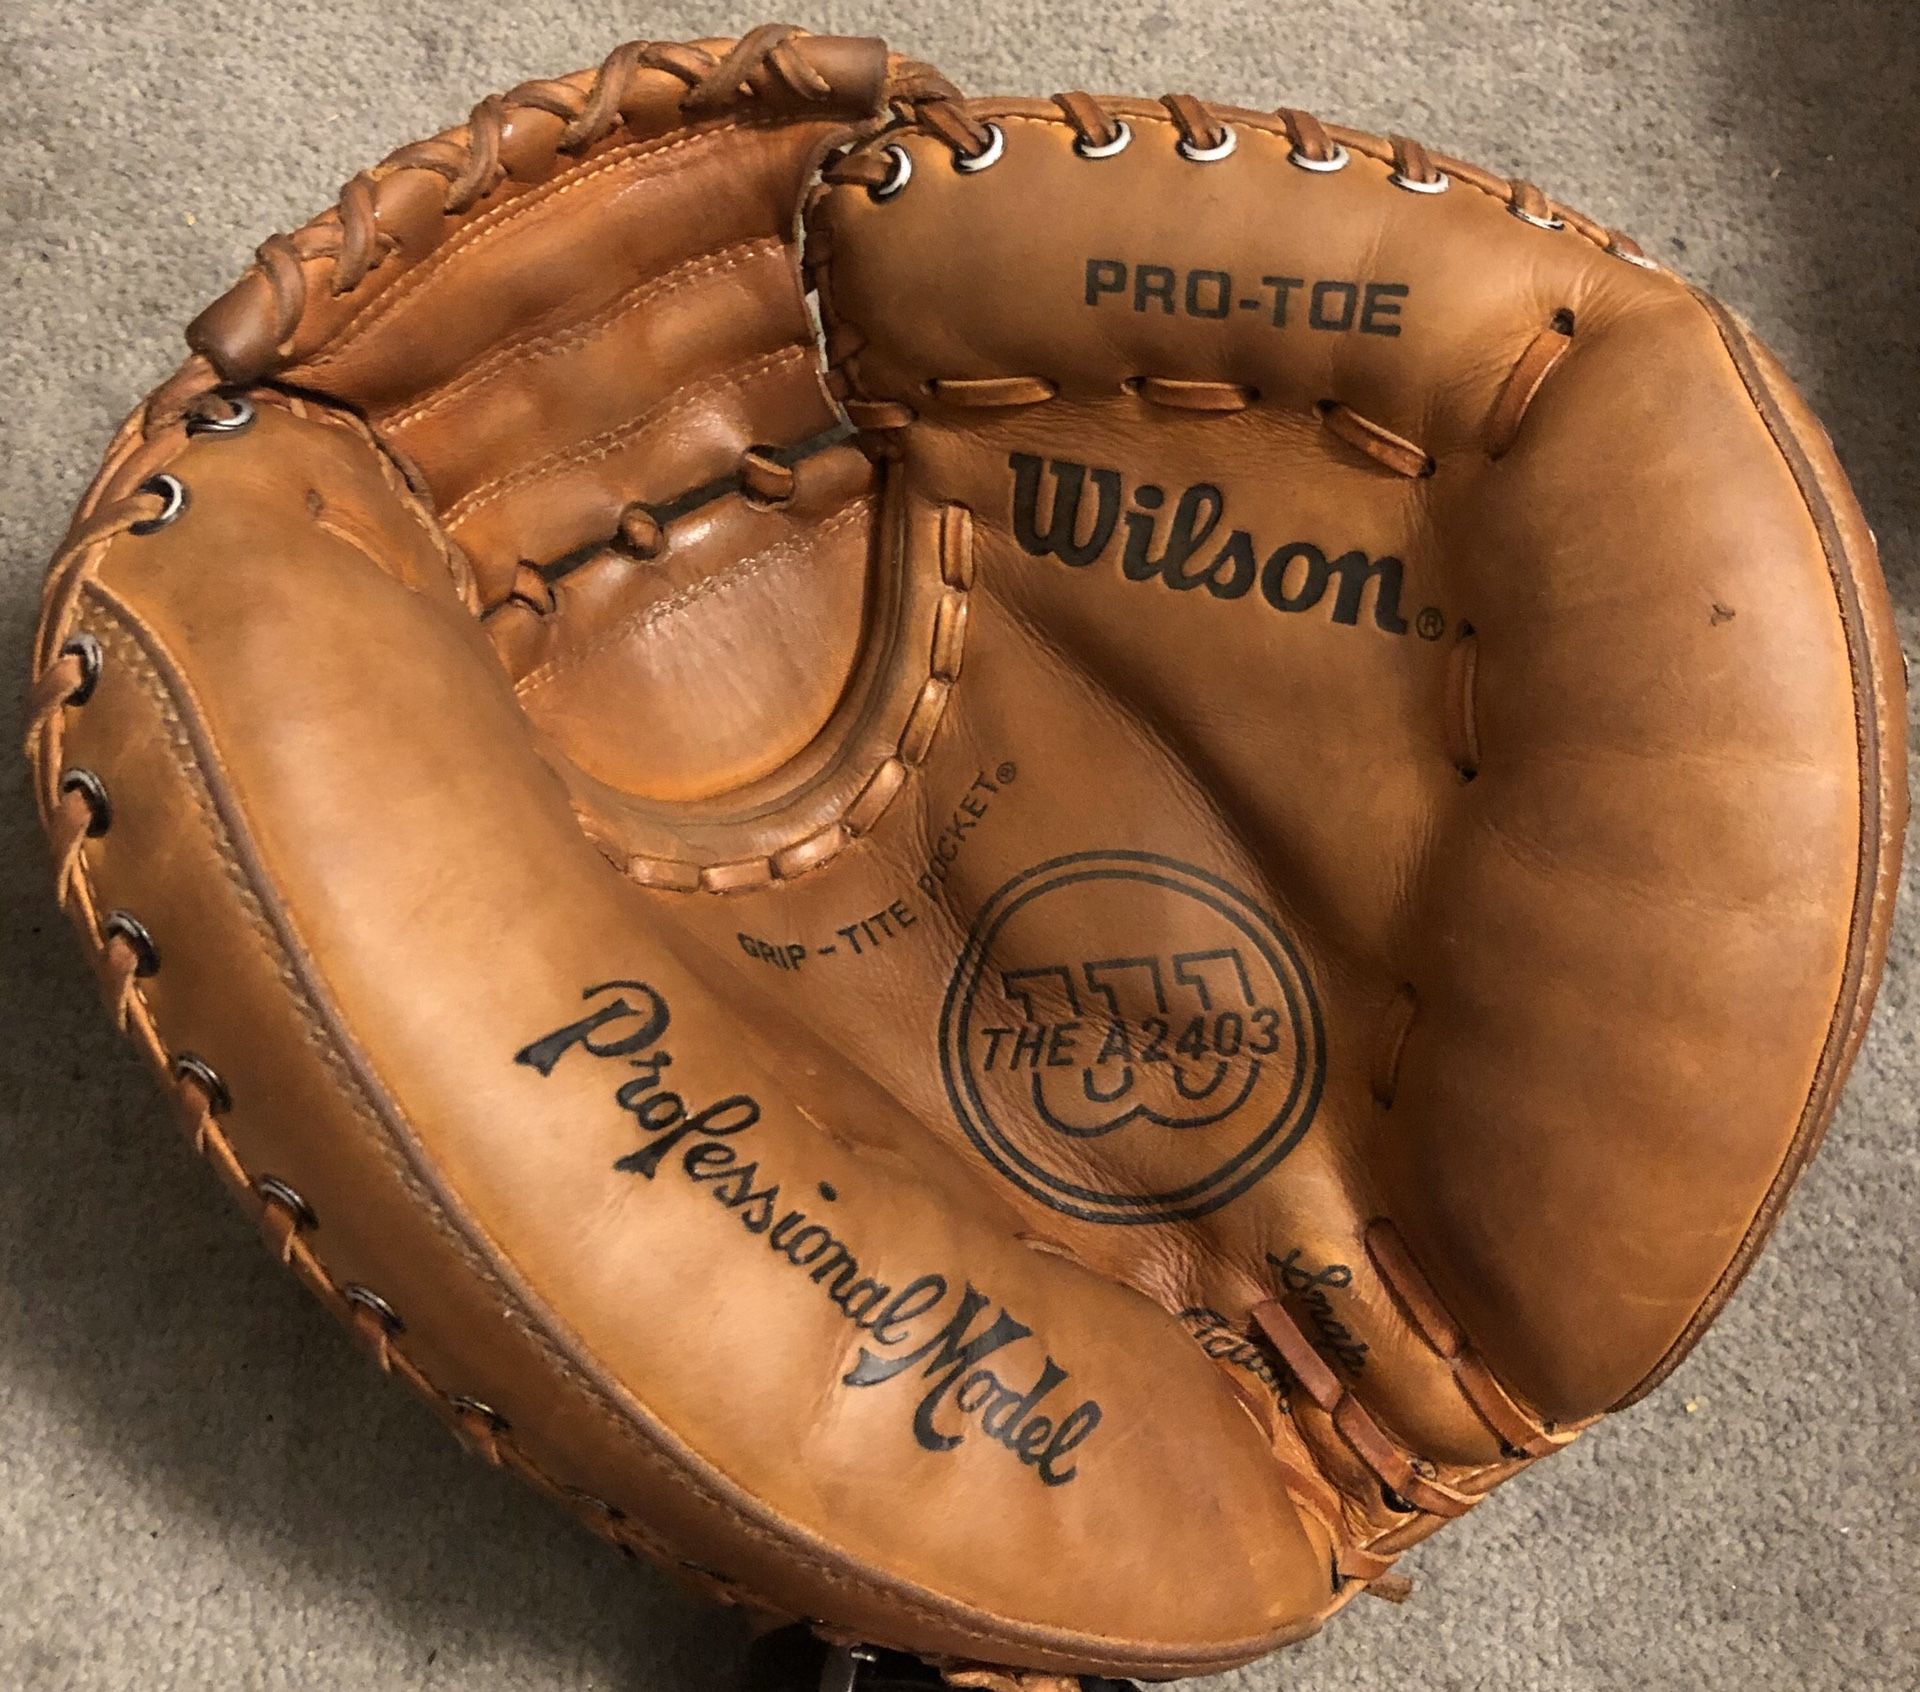 Wilson A2403 Baseball Catcher’s Glove